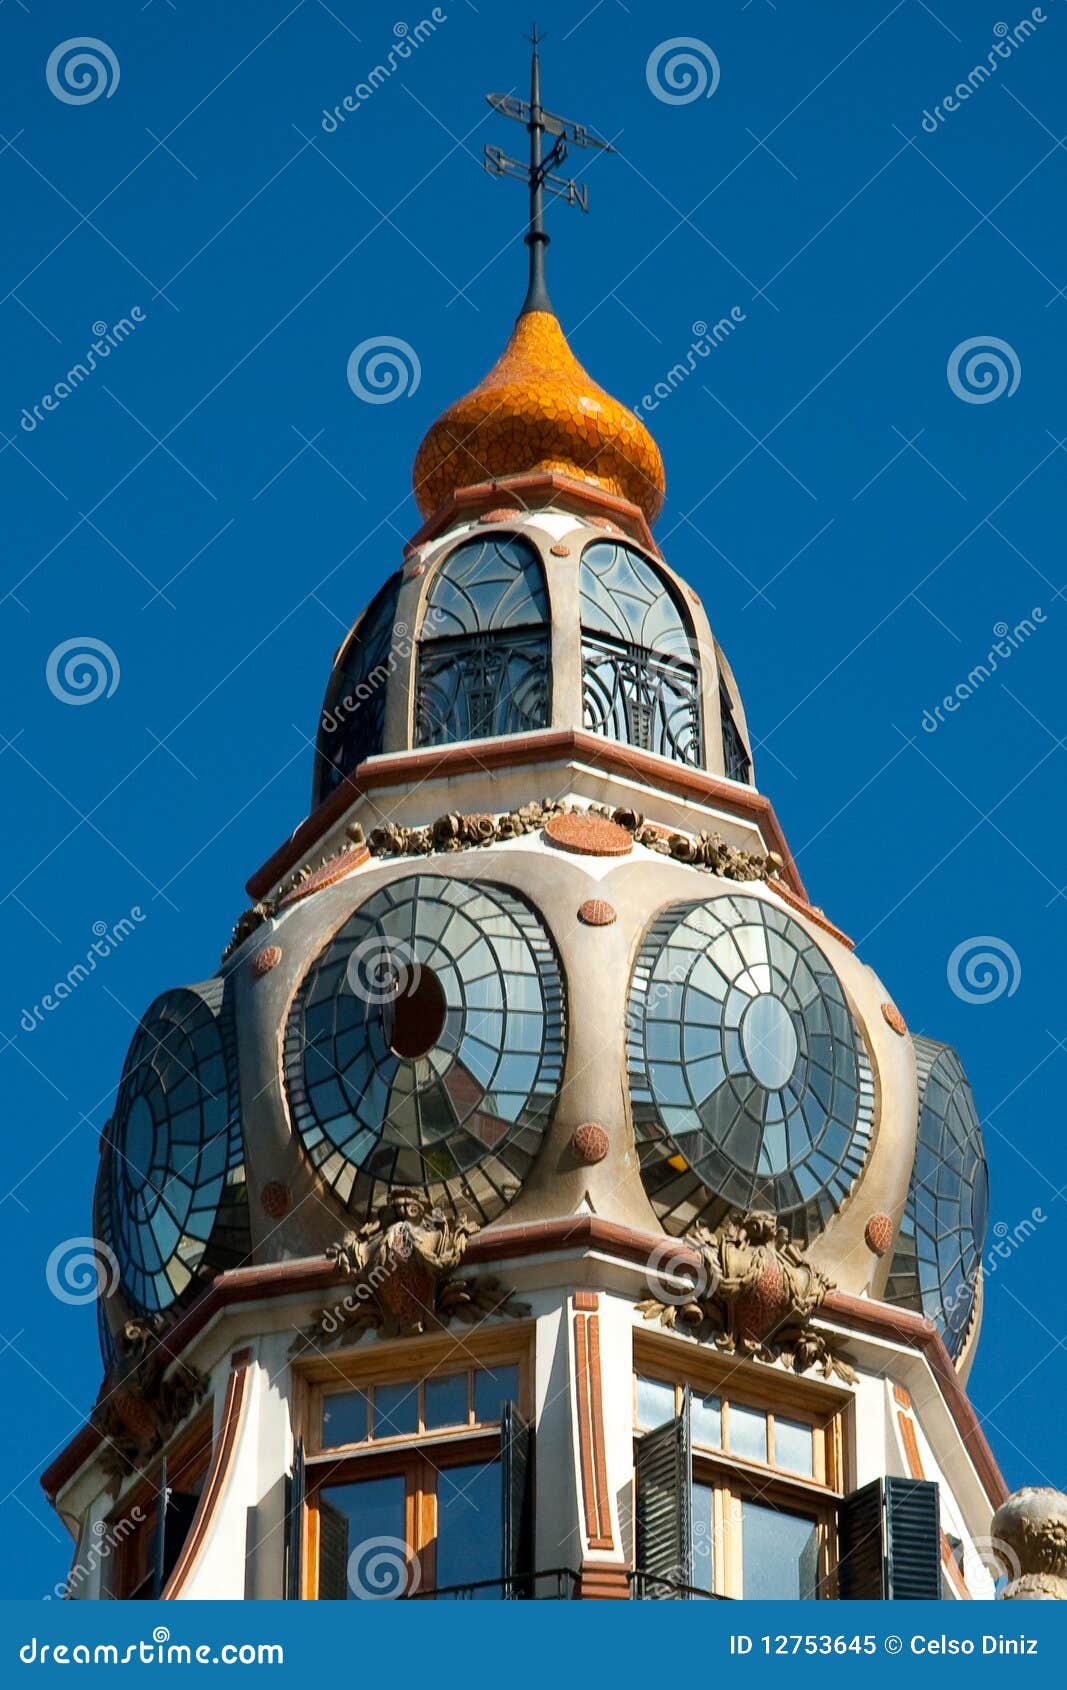 decorative cupola